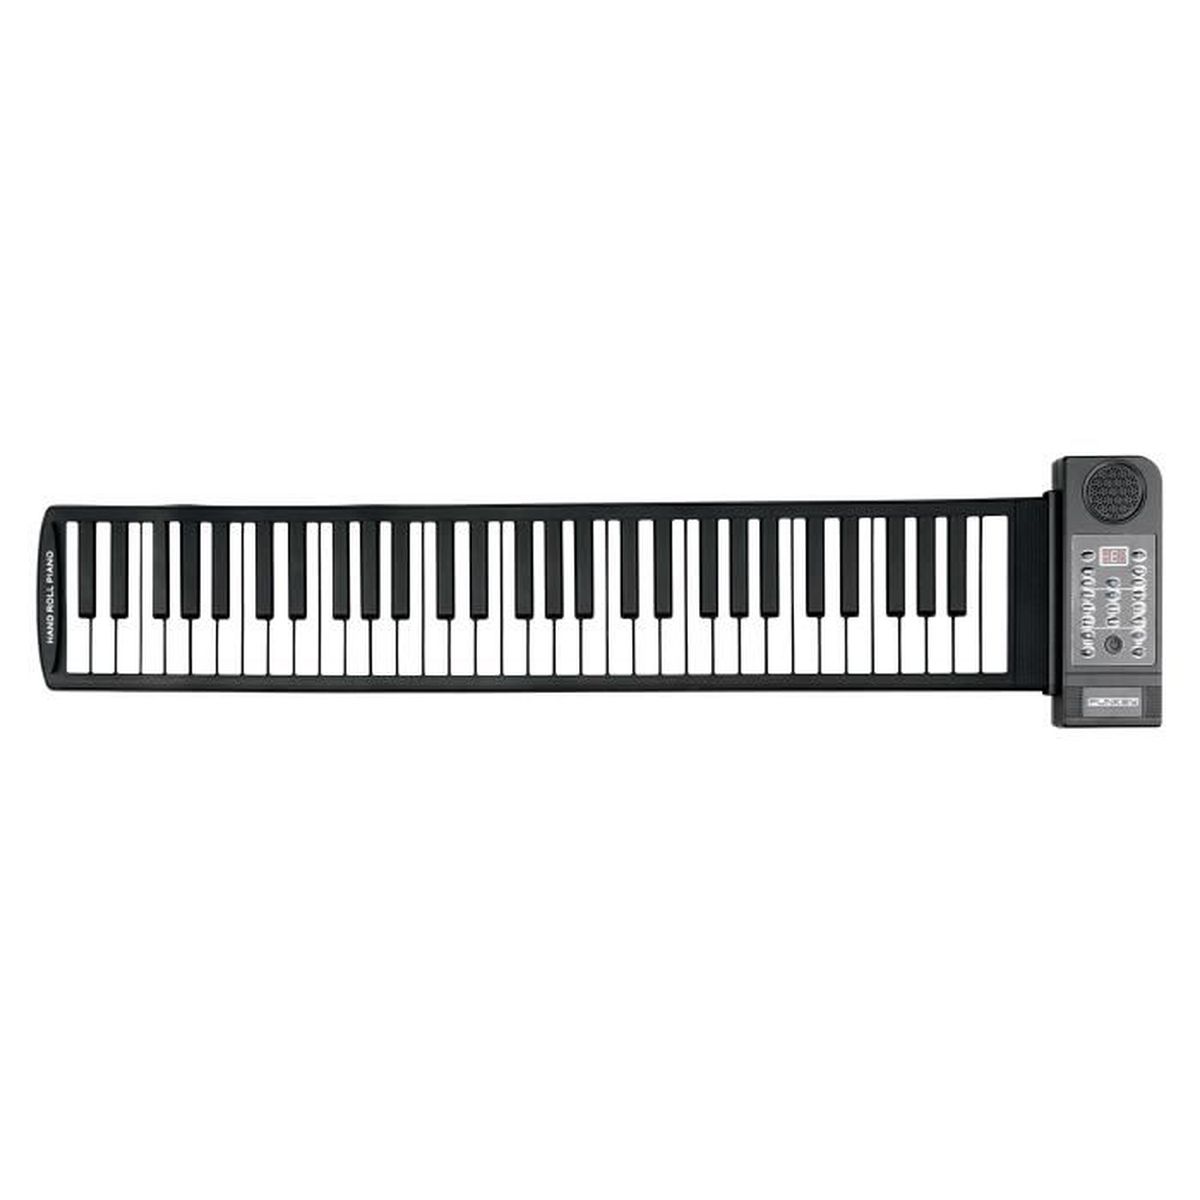 Rouler souple clavier piano synthétiseur avec touches programmables :  : Instruments de musique, scène et studio